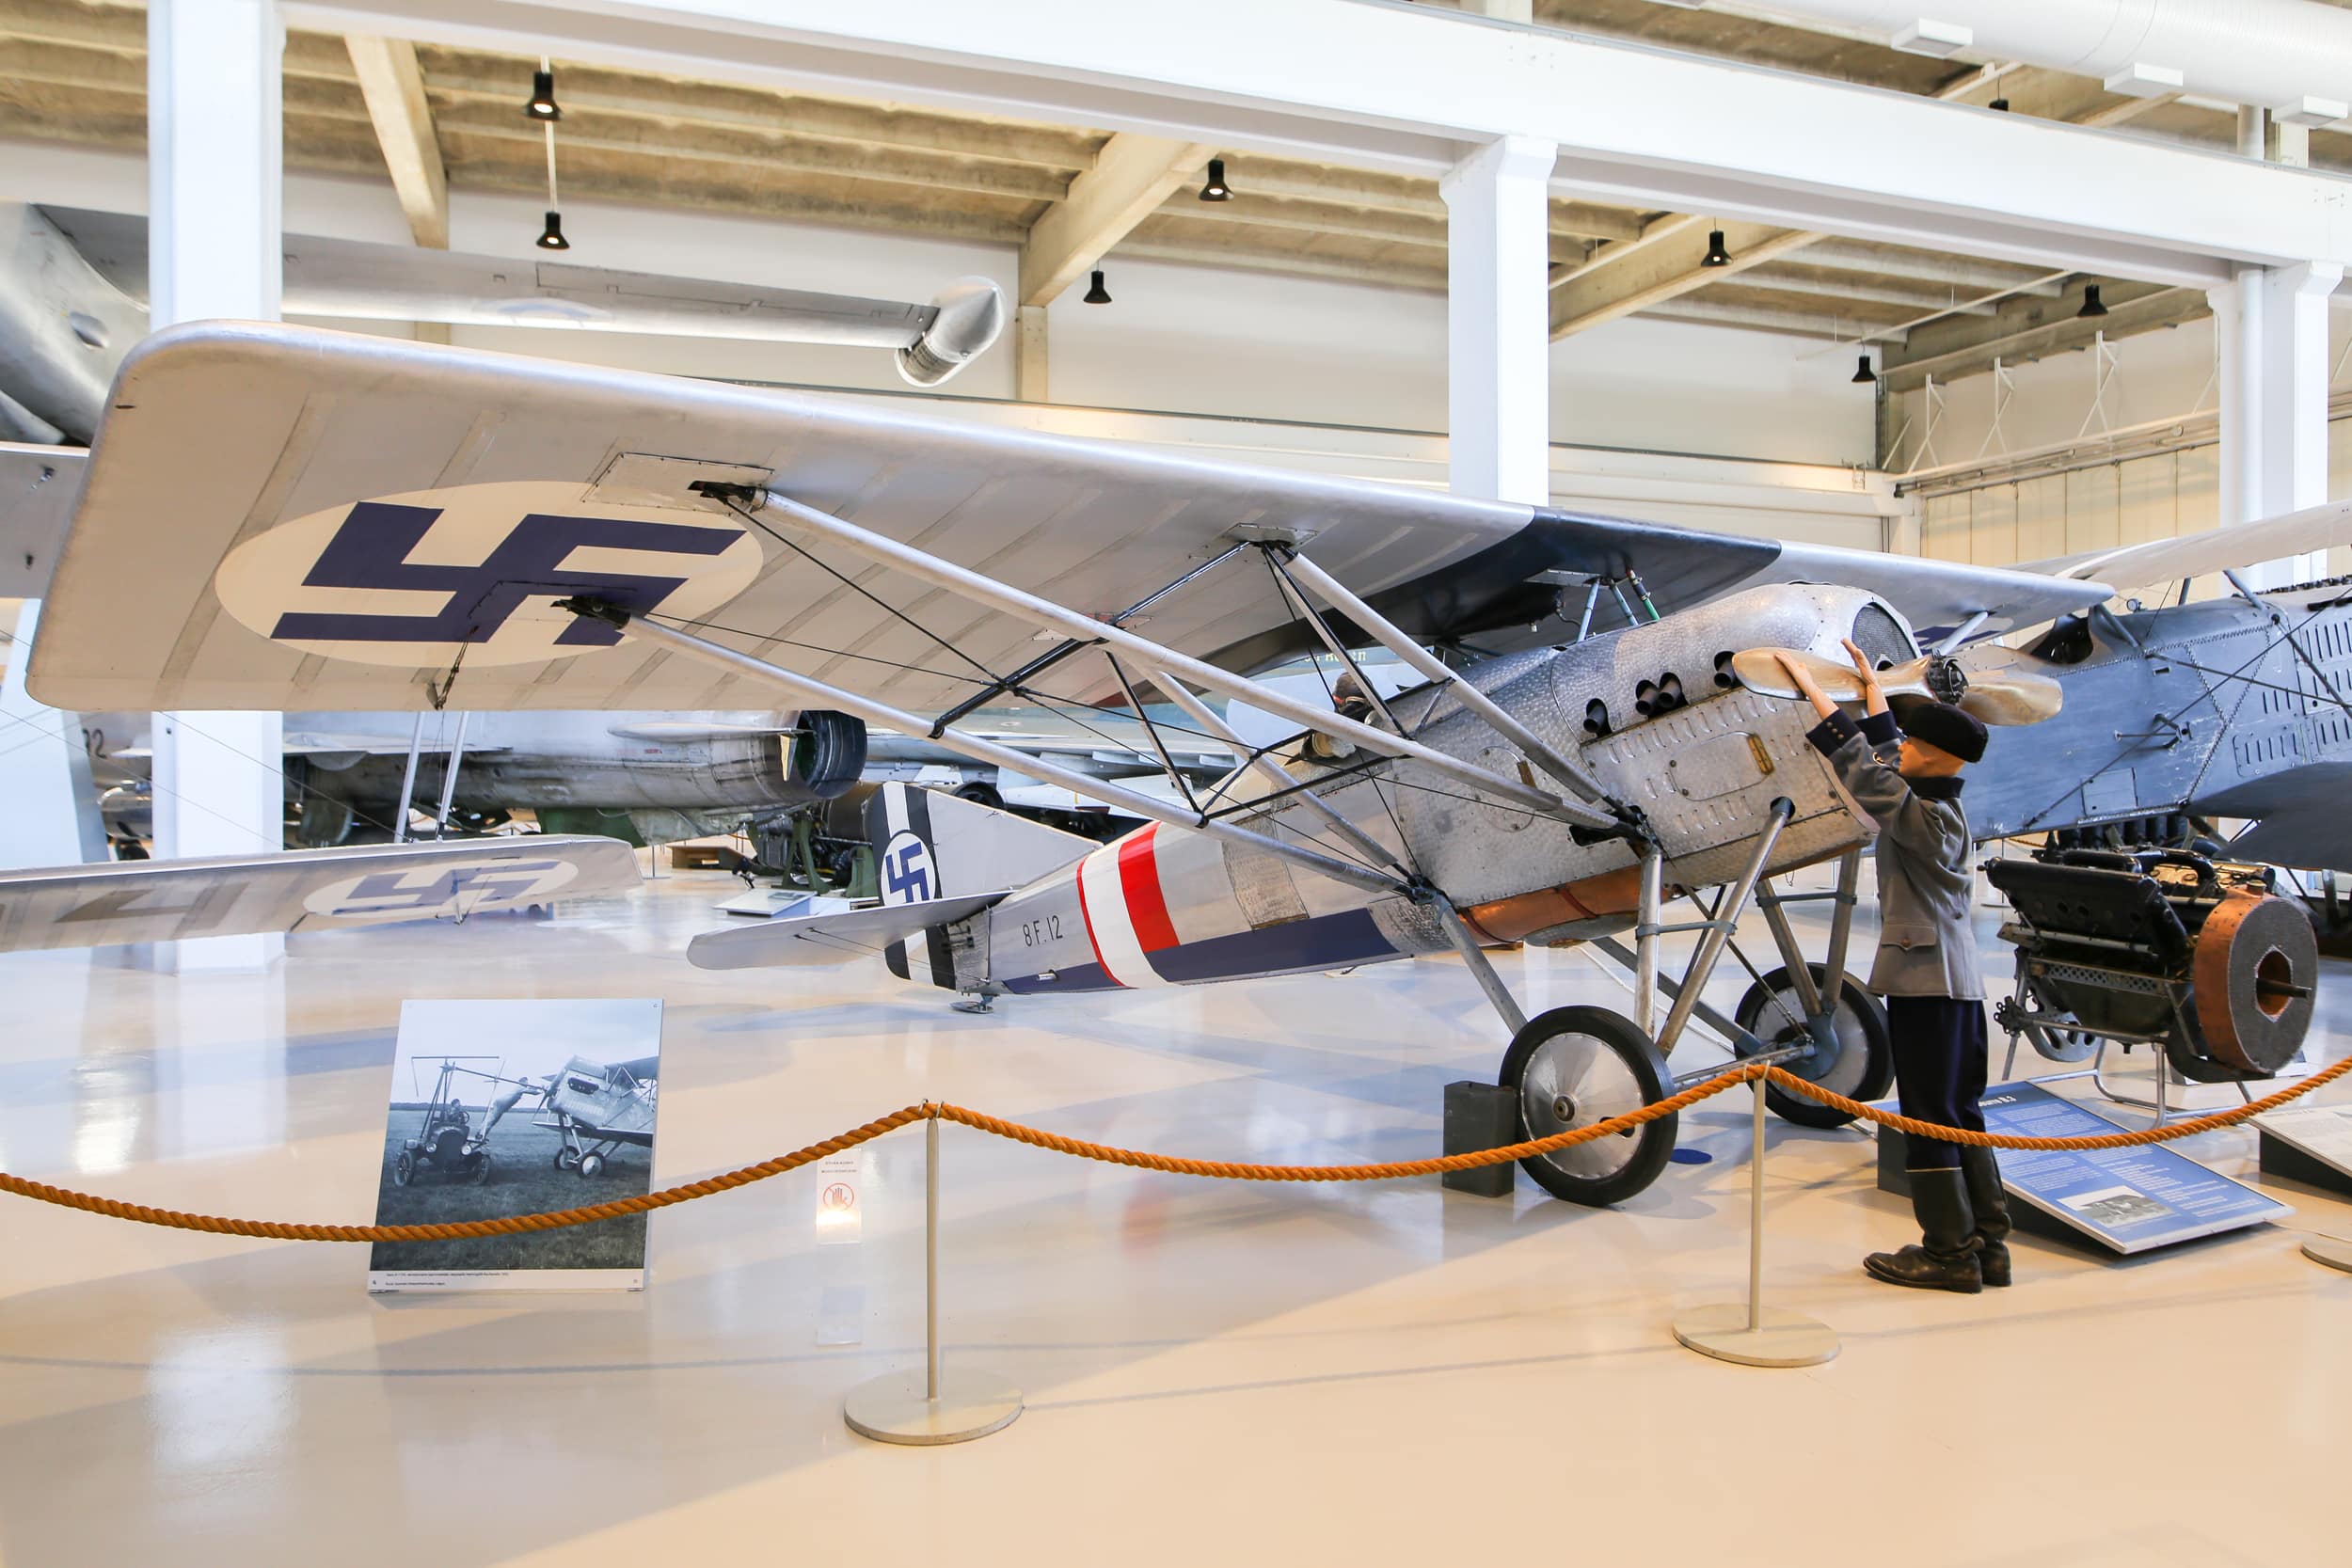 Pieni, yksitasoinen, hopeanharmaaksi maalattu, Gourdou-Leseurre-lentokone näyttelyssä.